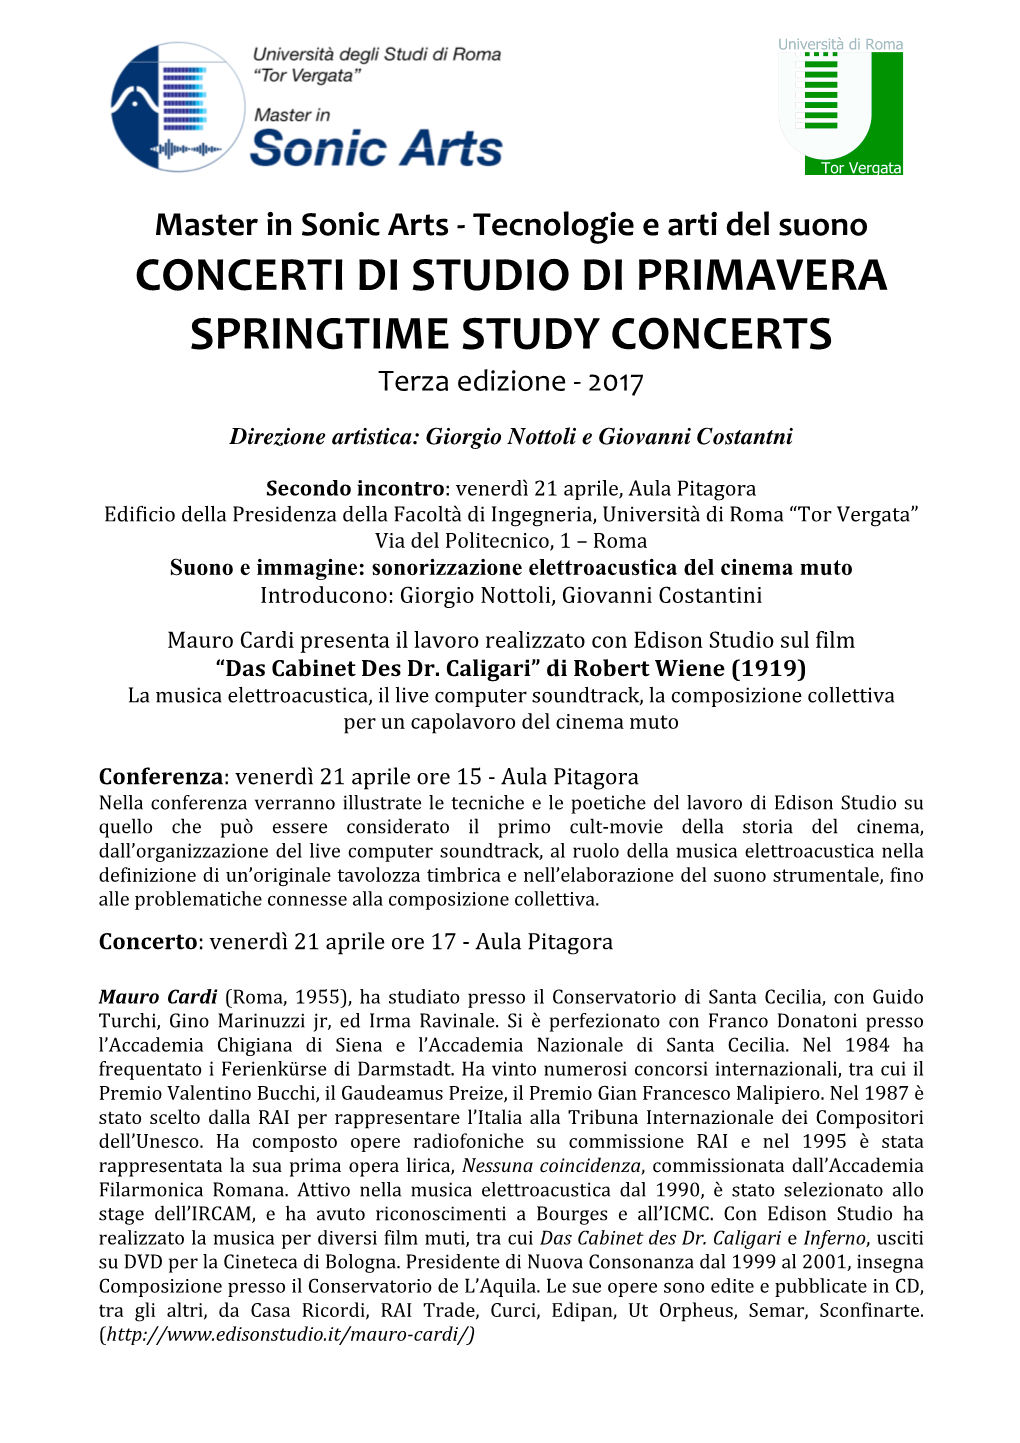 CONCERTI DI STUDIO DI PRIMAVERA SPRINGTIME STUDY CONCERTS Terza Edizione - 2017